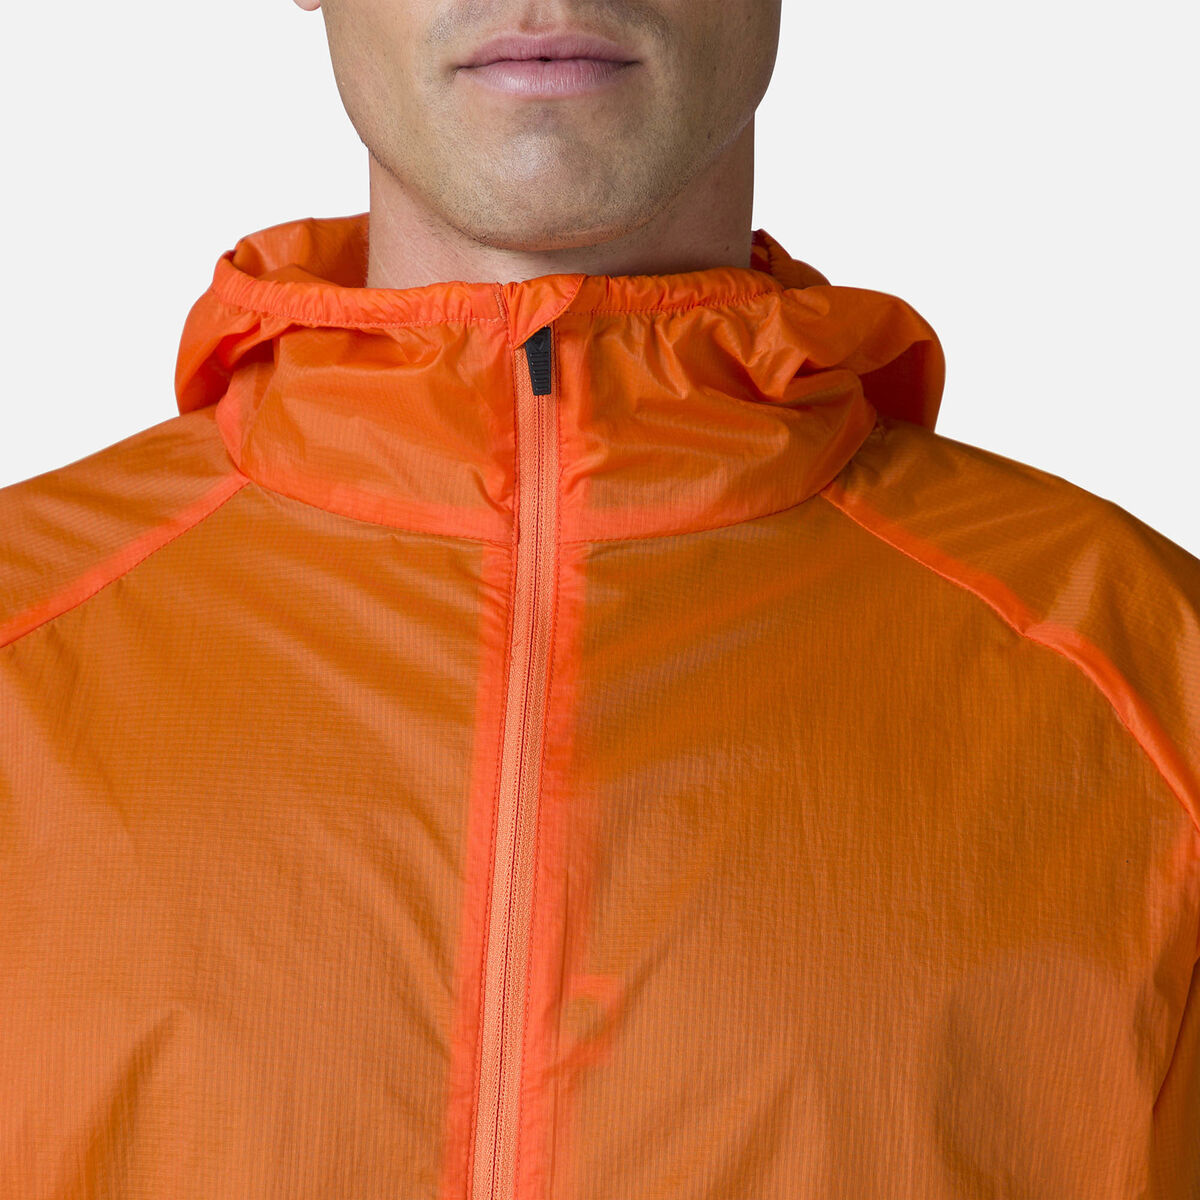 Rossignol Men's Ultralight Packable Jacket orange